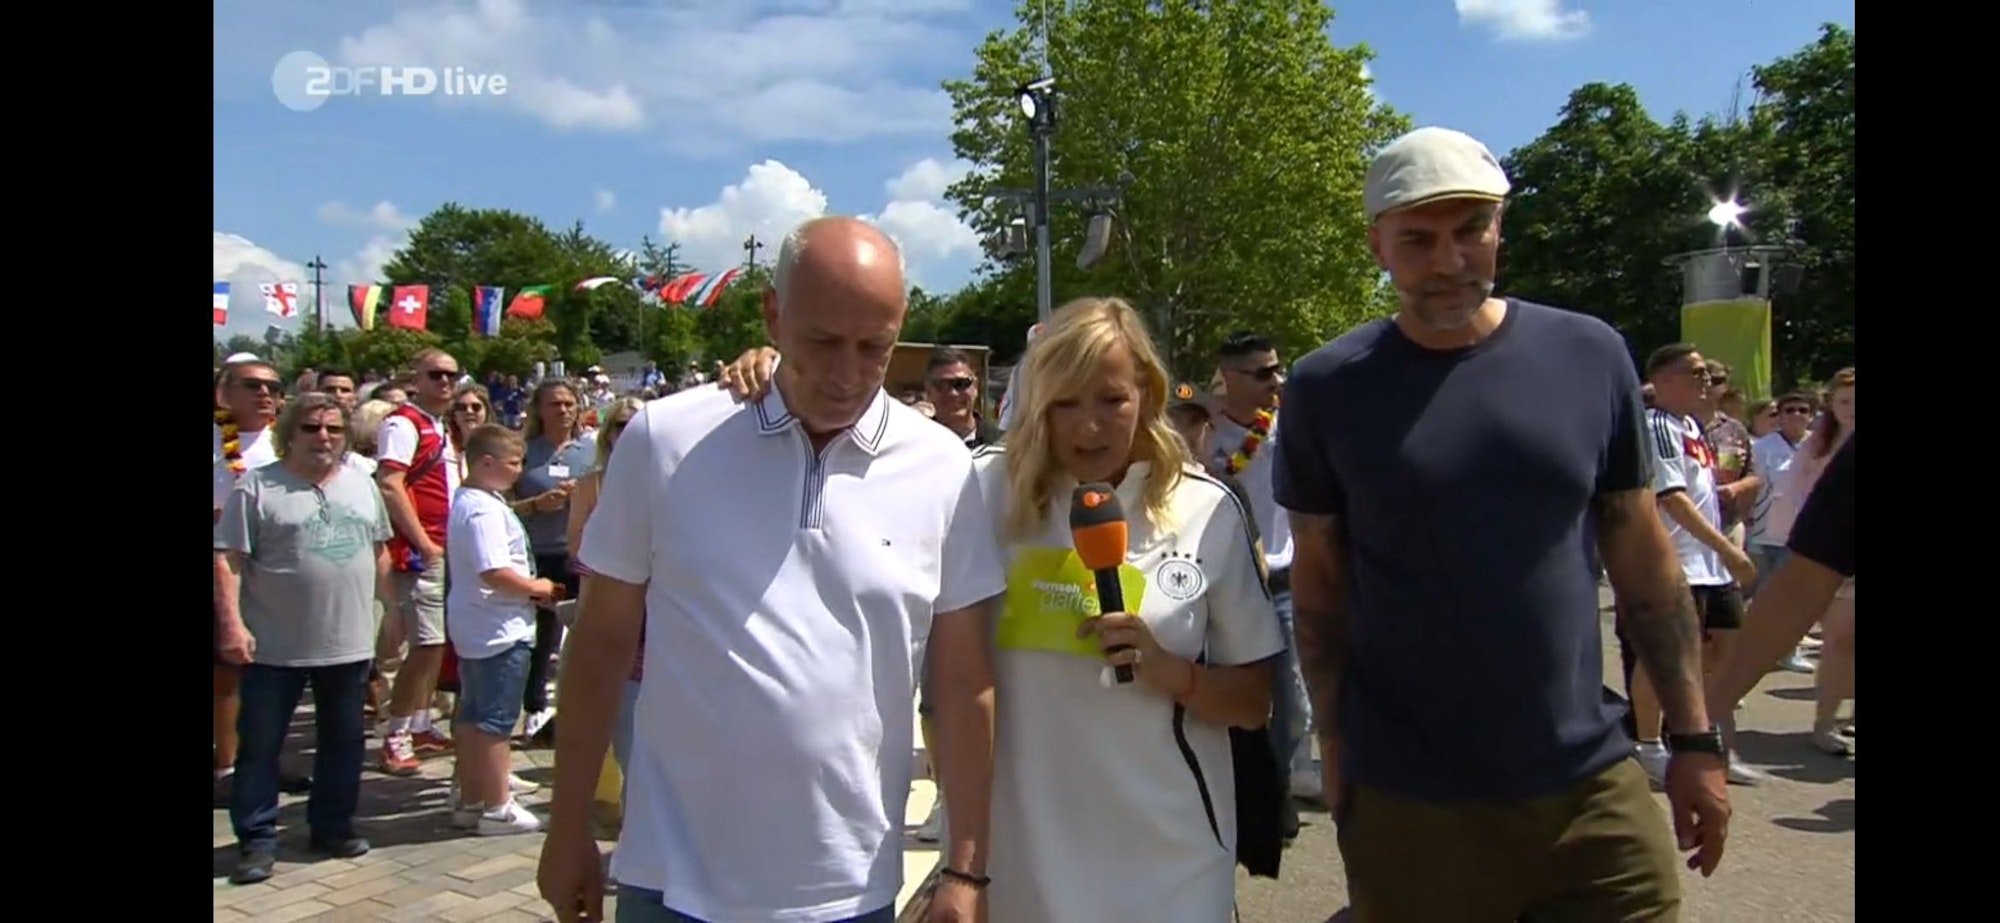 Der Screenshot stammt aus dem ZDF-Fernsehgarten. Er zeigt die Ex-Fußballer Mario Basler (l.) und Markus Babbel (r.) im Gespräch mit Andrea Kiewel (M.). Screenshot am 23. Juni erstellt zum Zwecke der Berichterstattung.